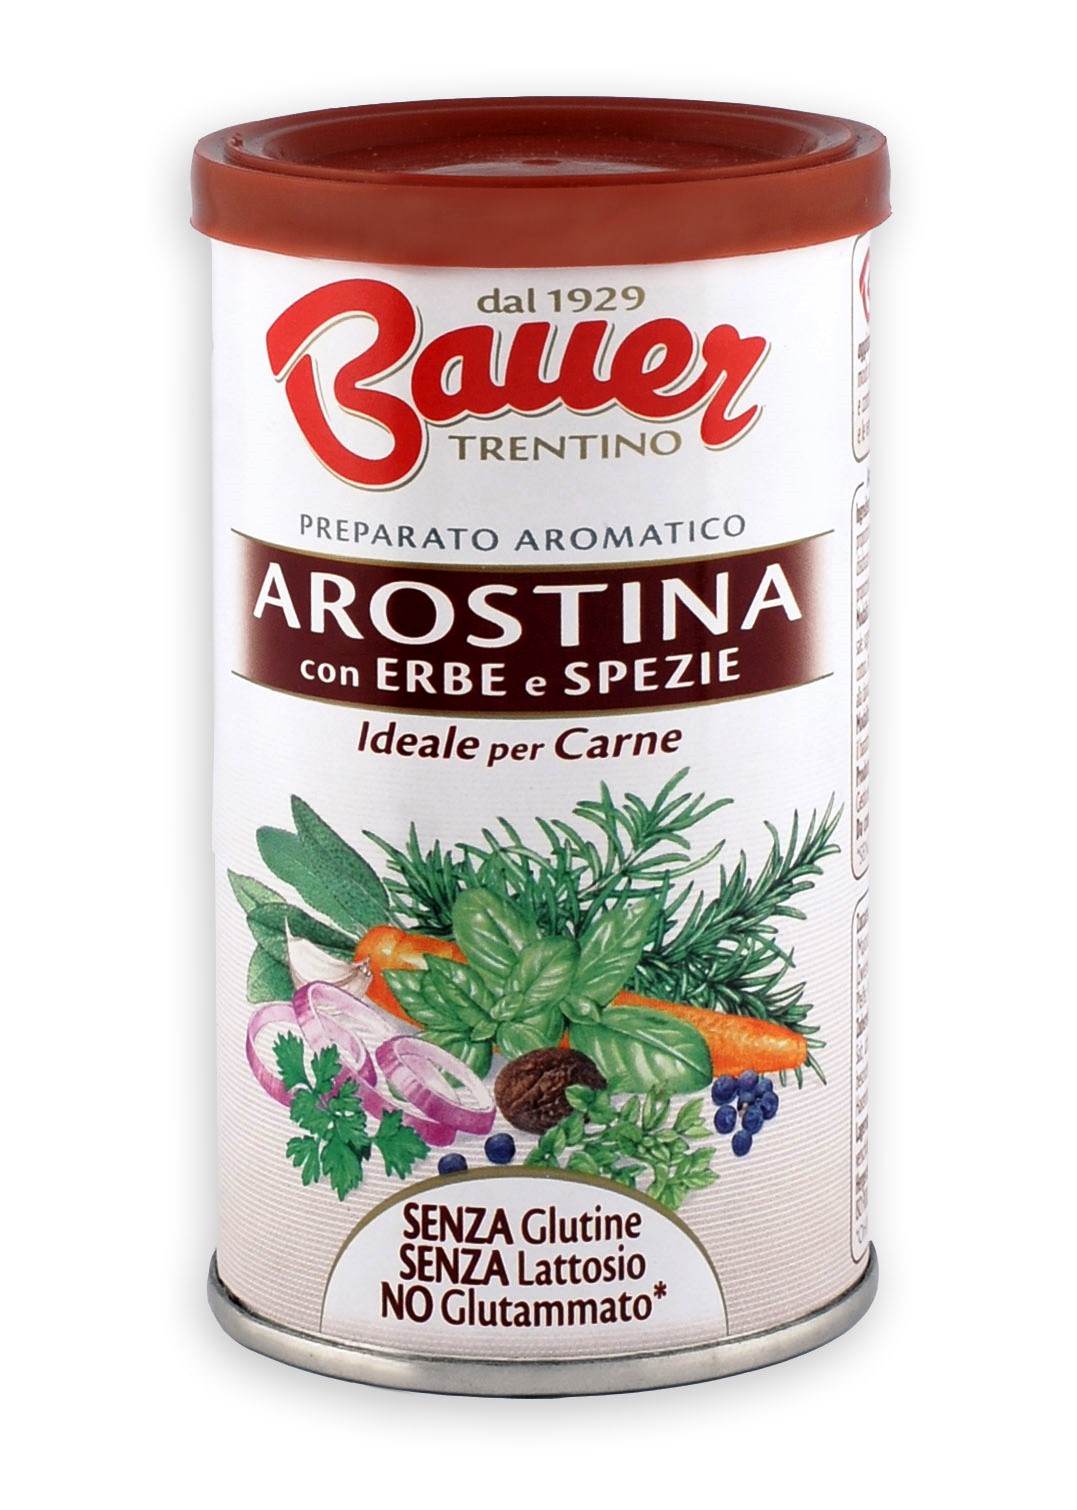 Bauer: Arostina con erbe e spezie per esaltare il sapore di carni e verdure